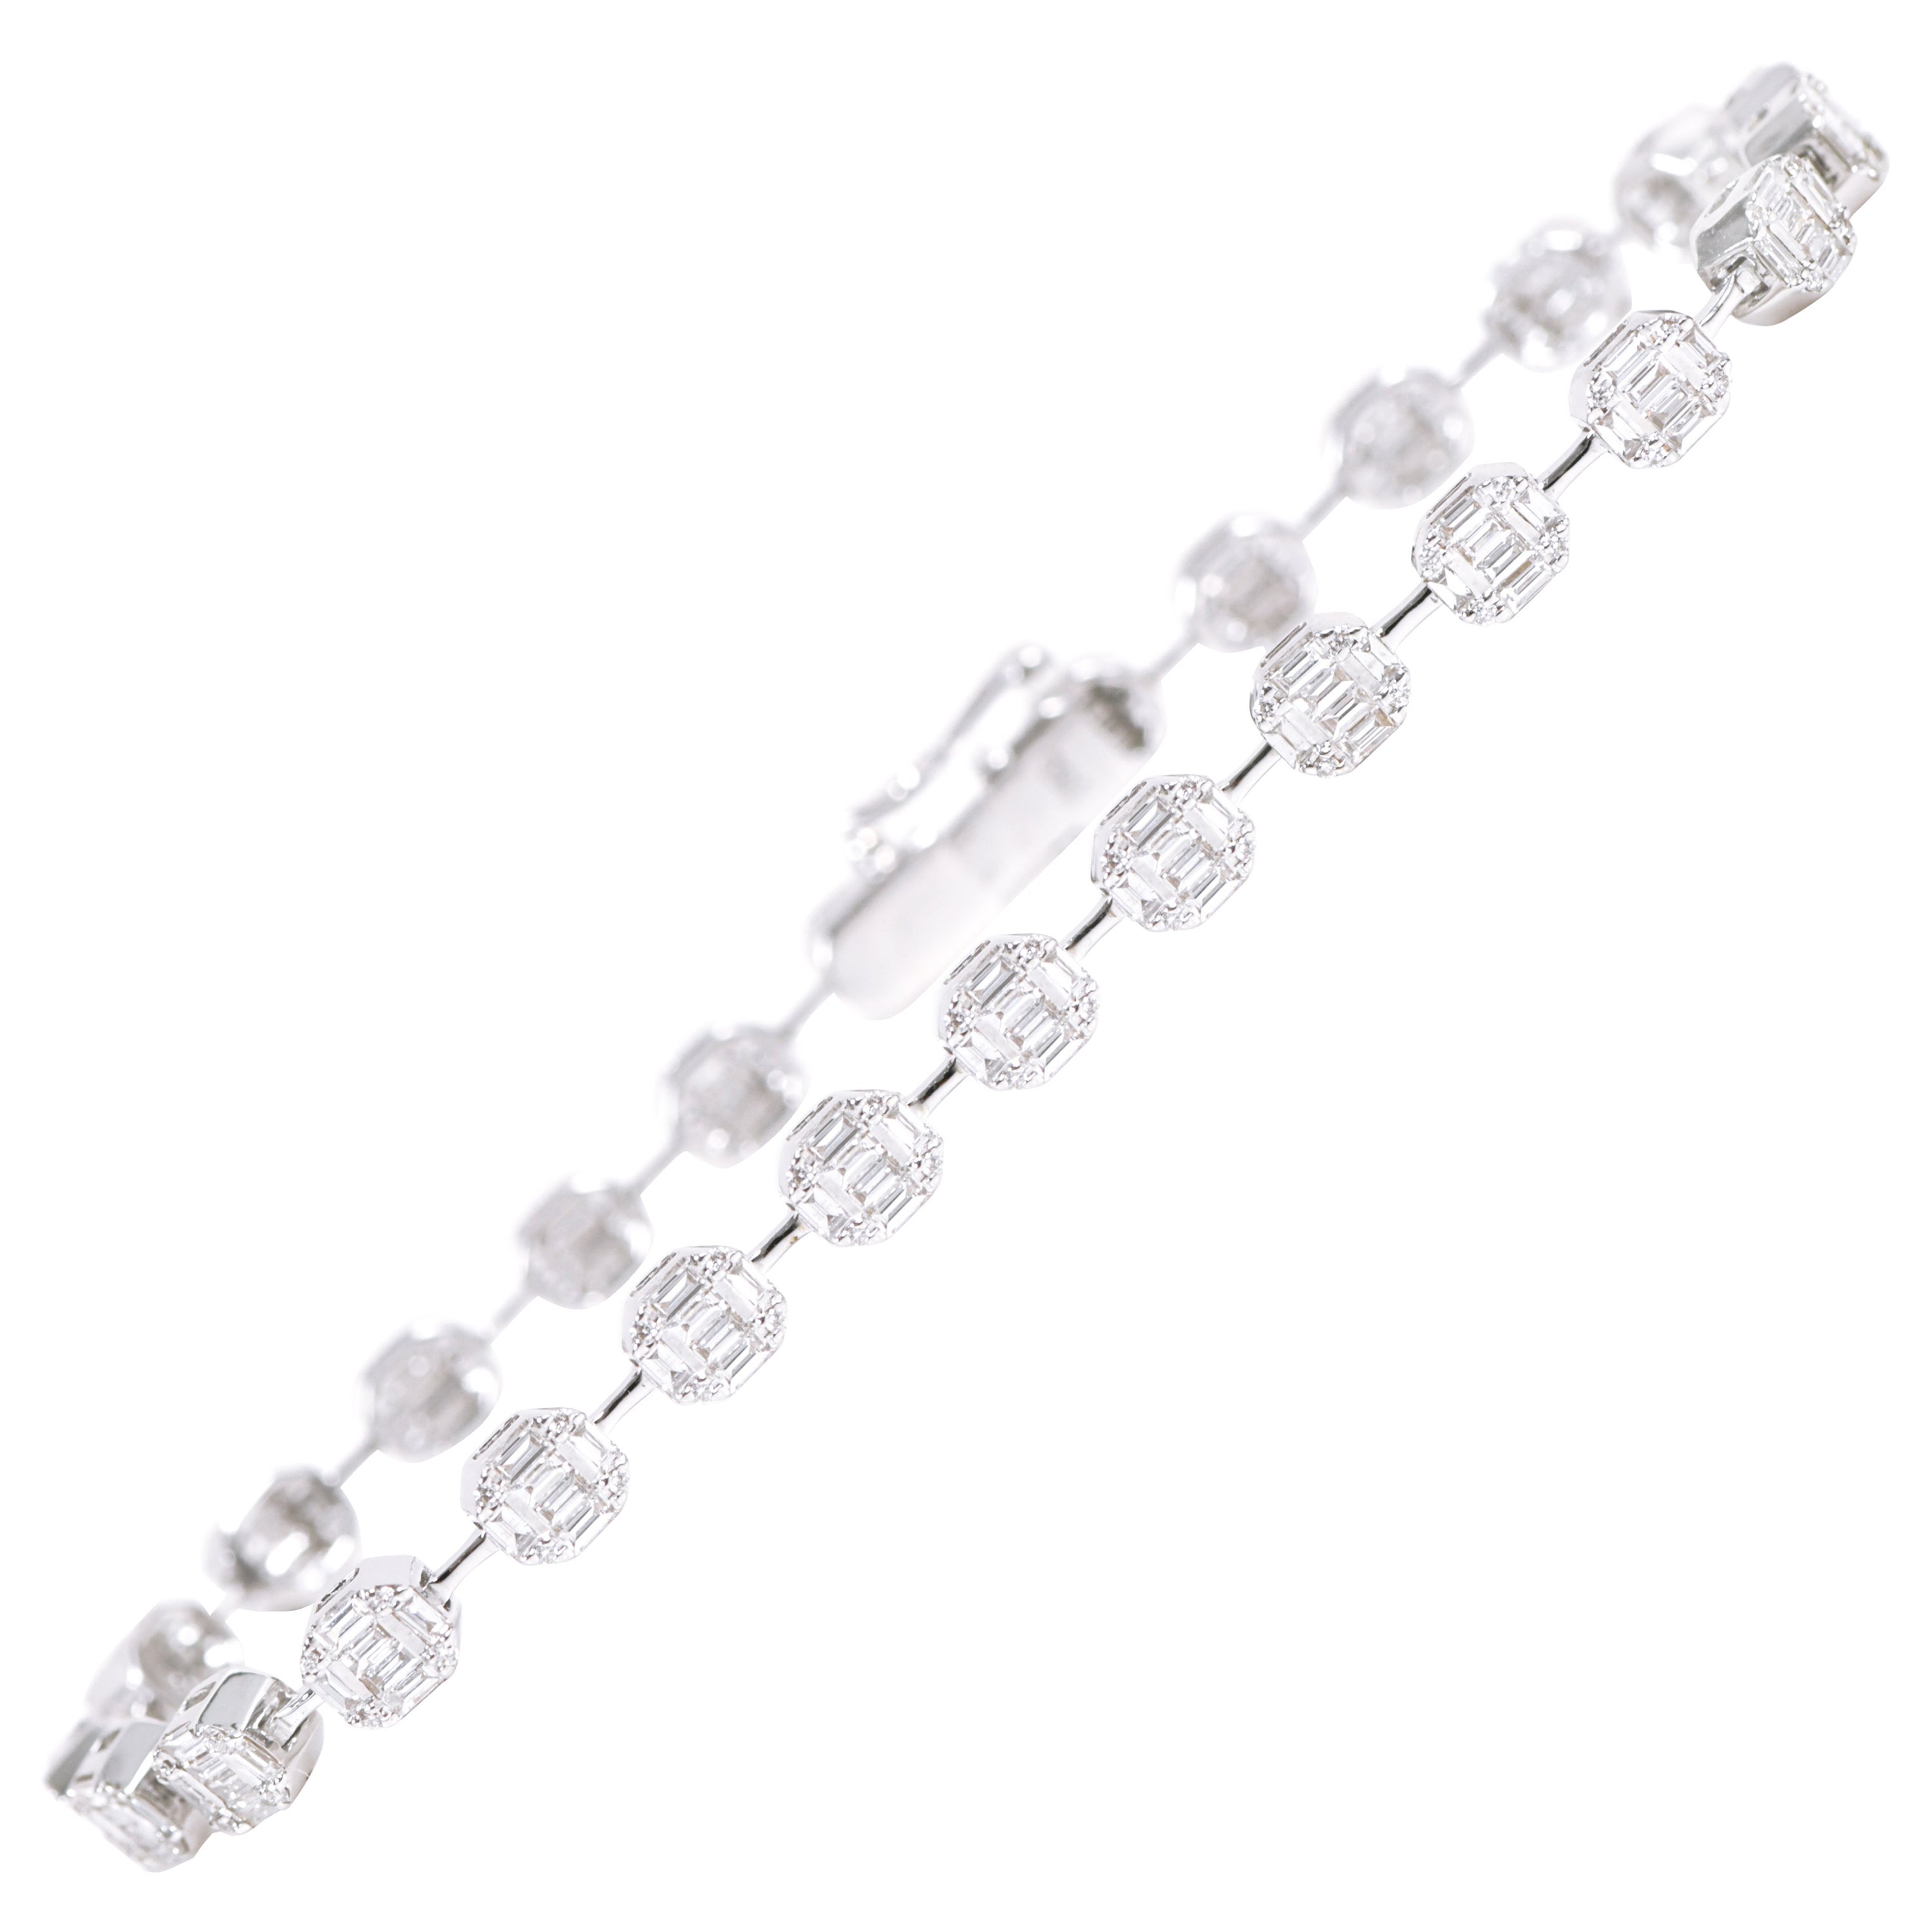 Bracelet tennis en or blanc 18 carats avec diamants sertis invisibles de 1,92 carat